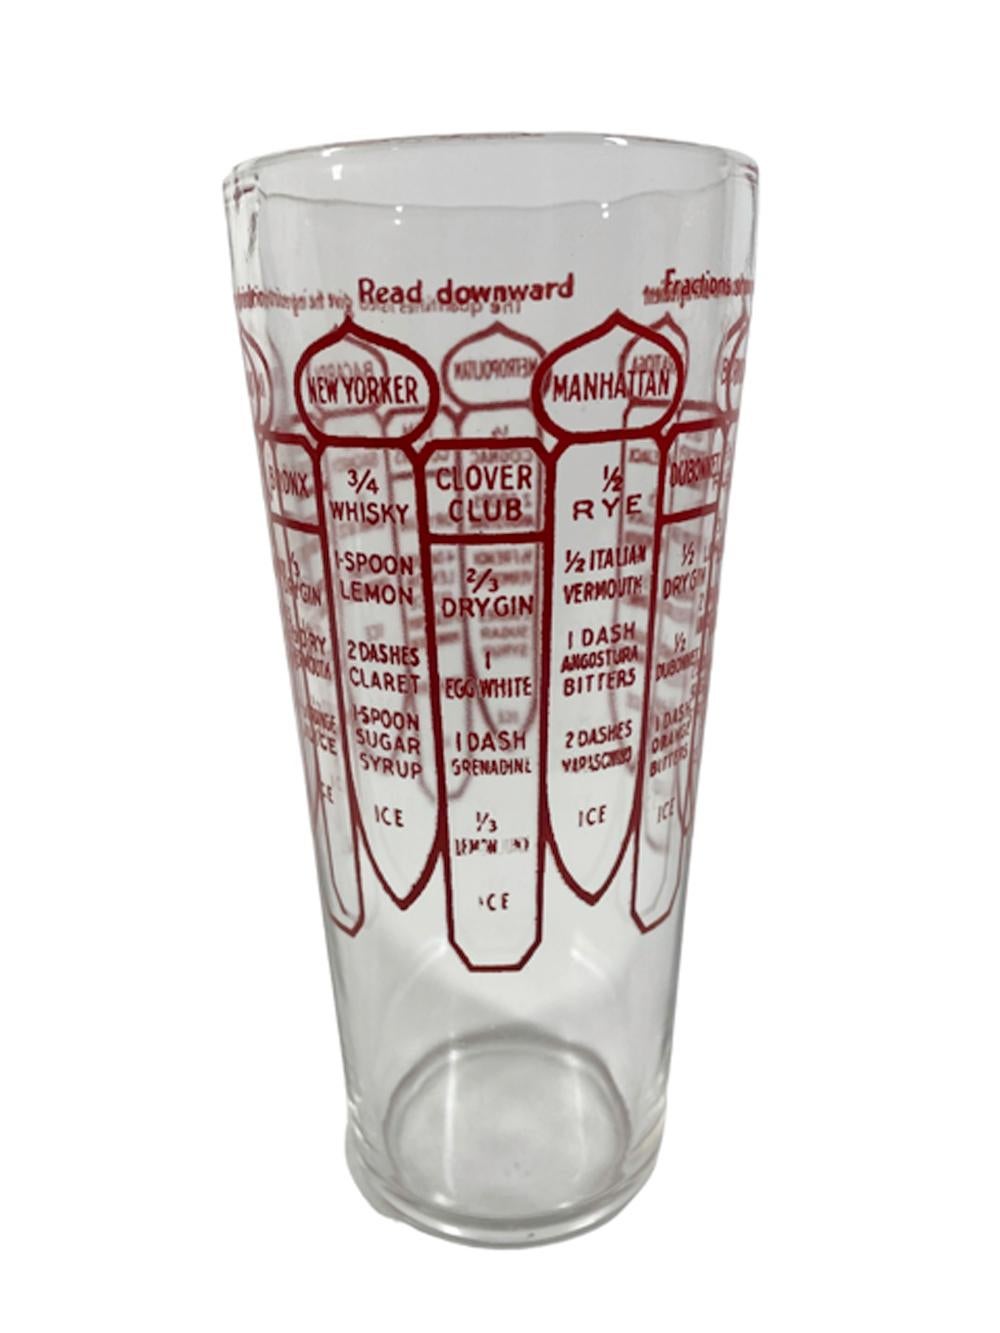 Shakers Art déco en verre transparent fuselé avec des graphiques rouges indiquant les recettes de 13 cocktails, y compris les lignes de remplissage et les techniques de mélange. Surmonté d'un couvercle chromé en forme de dôme, avec bec verseur et